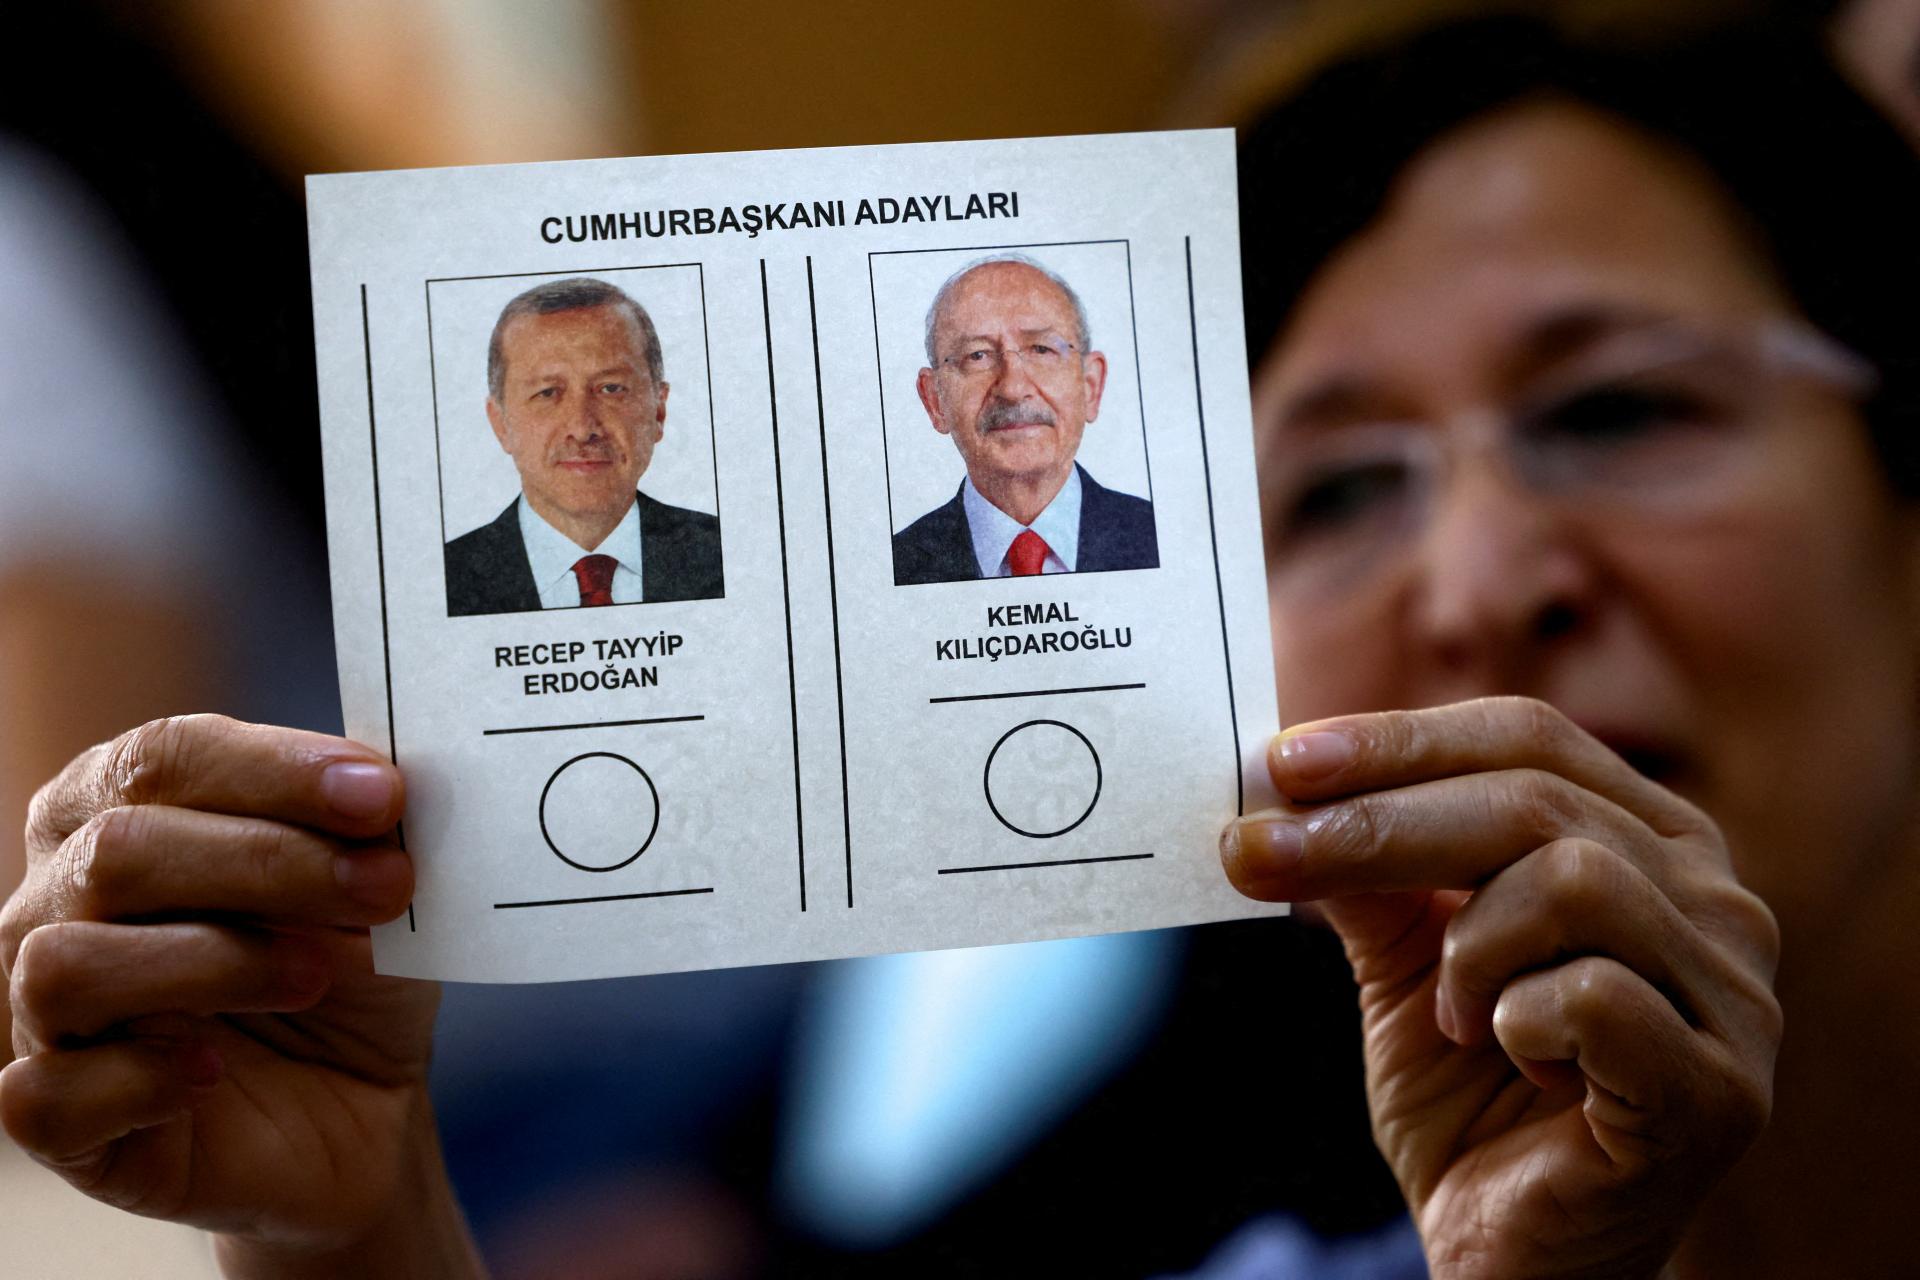 Falošné video a utečenci ako téma kampane. Turci znovu volia prezidenta